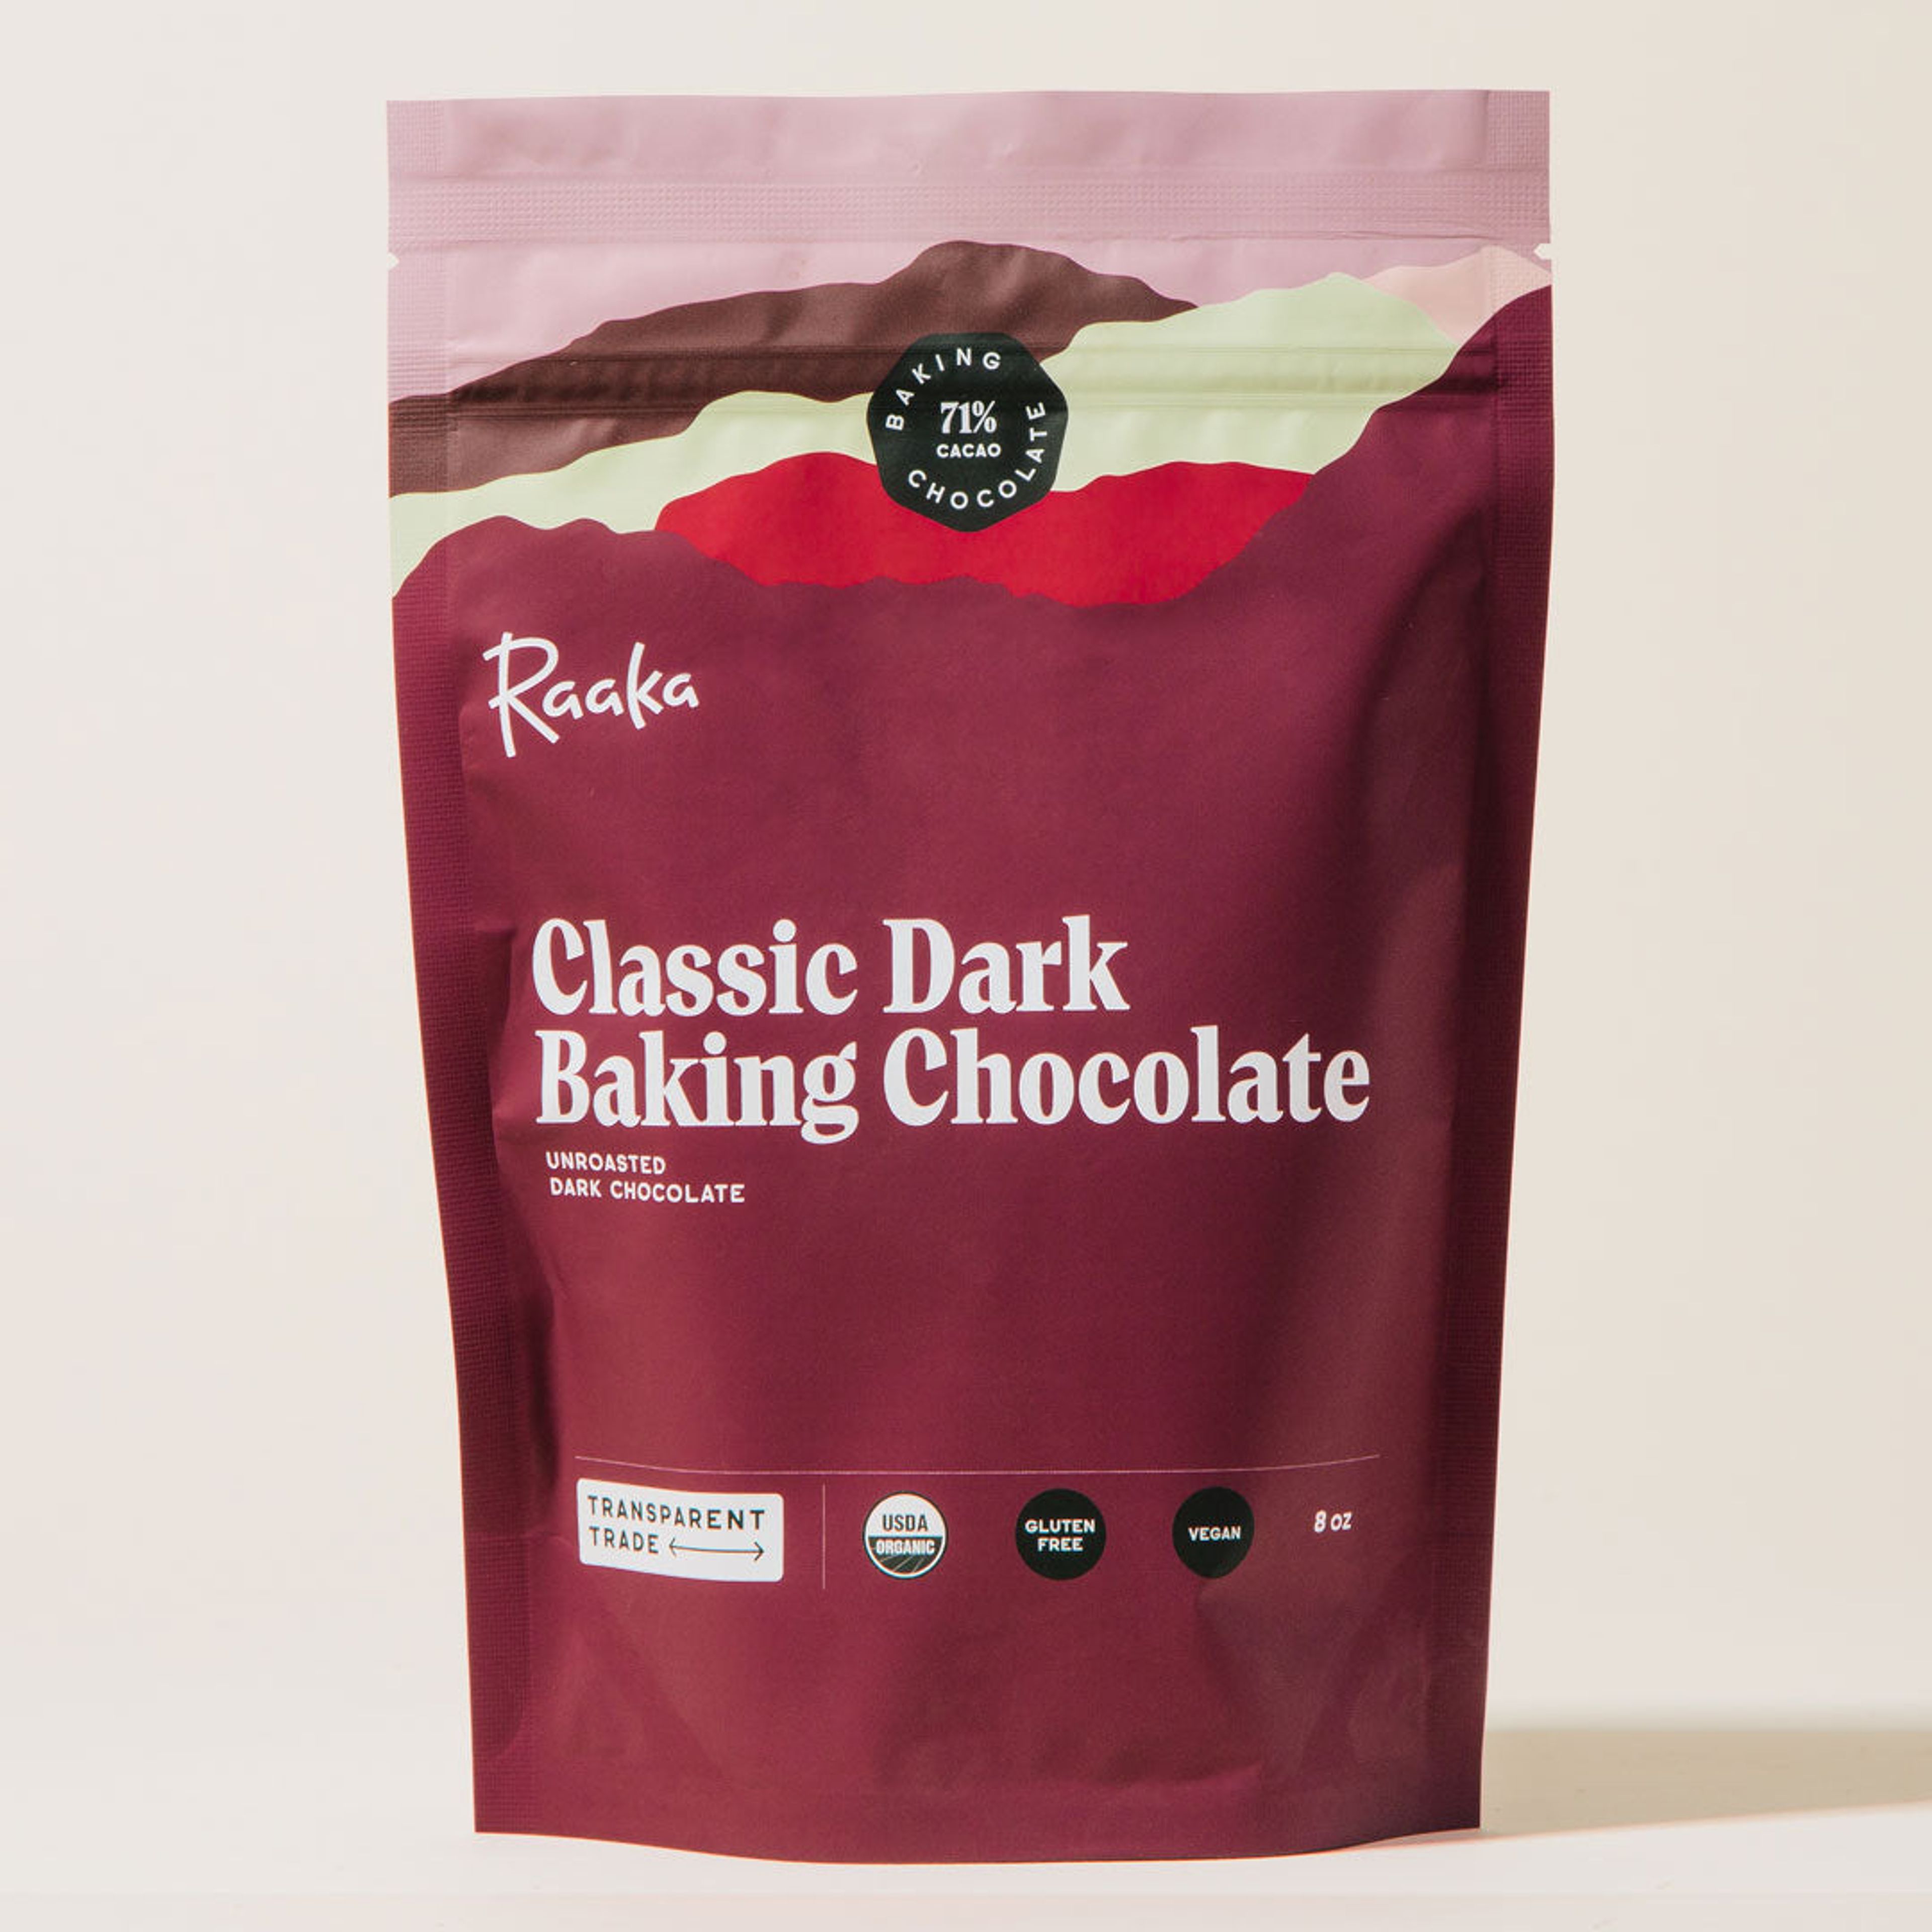 Classic Dark Baking Chocolate